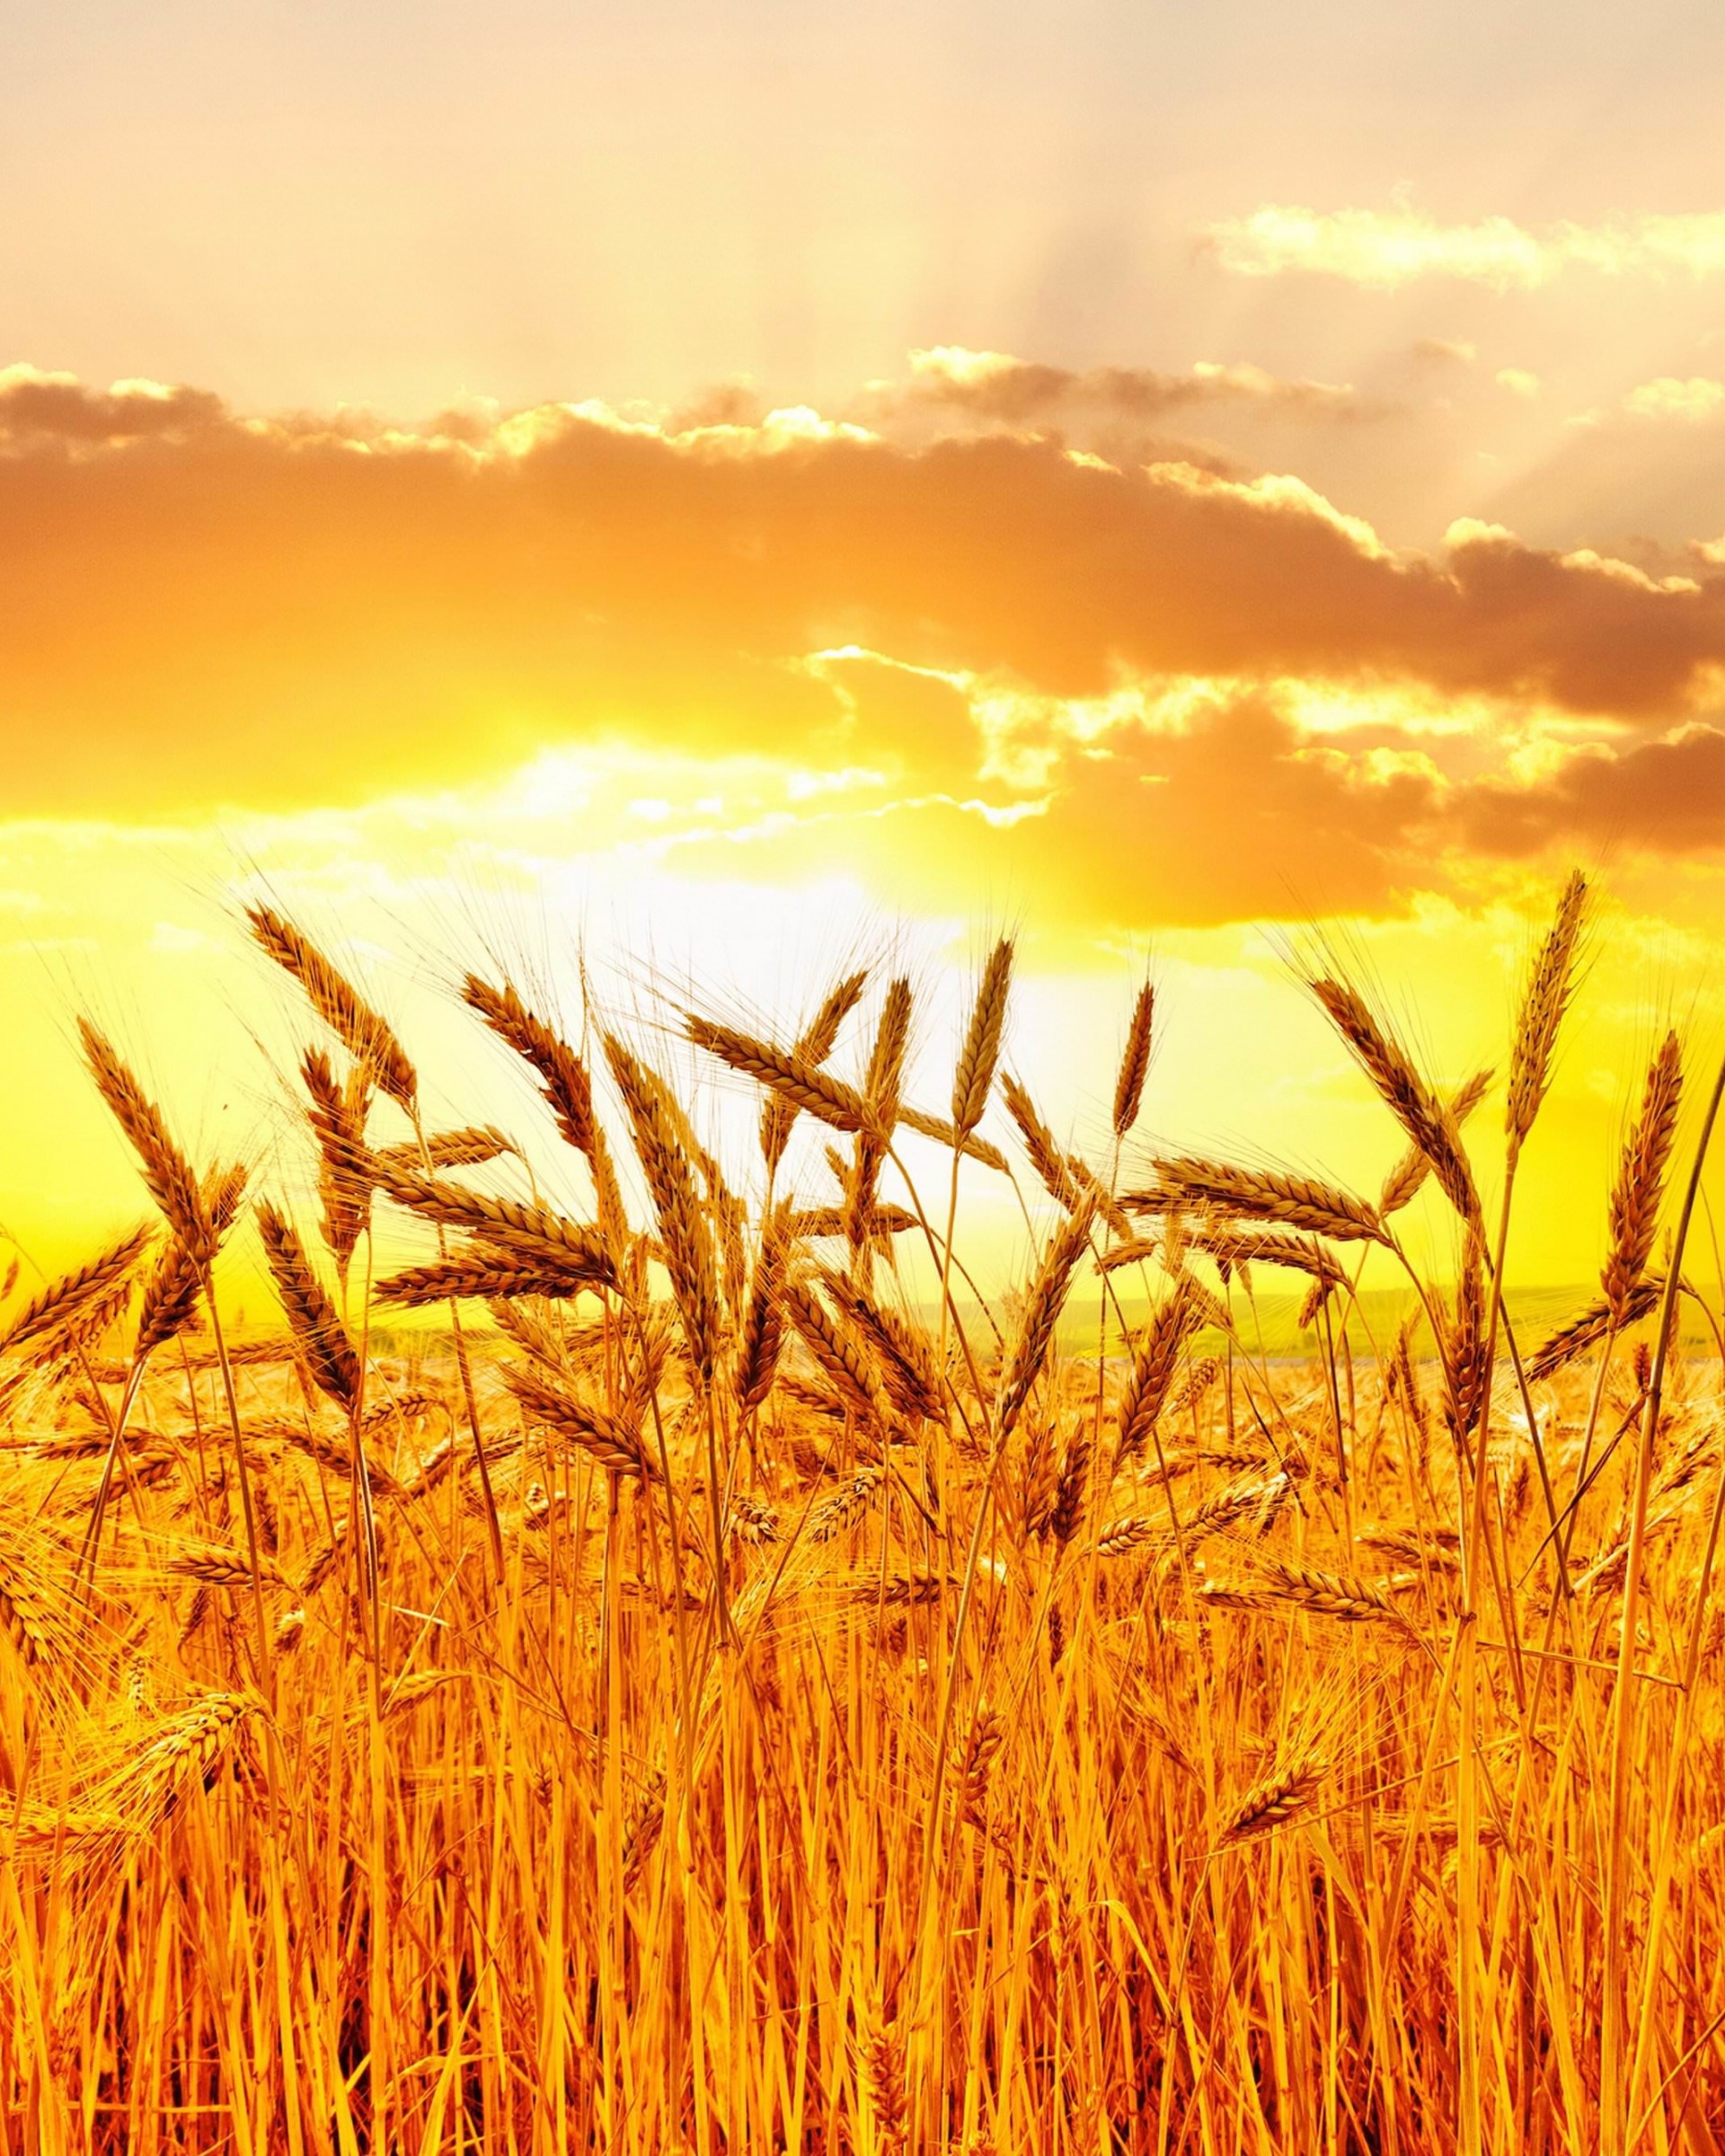 Golden Wheat Field At Sunset Wallpaper for Google Nexus 7